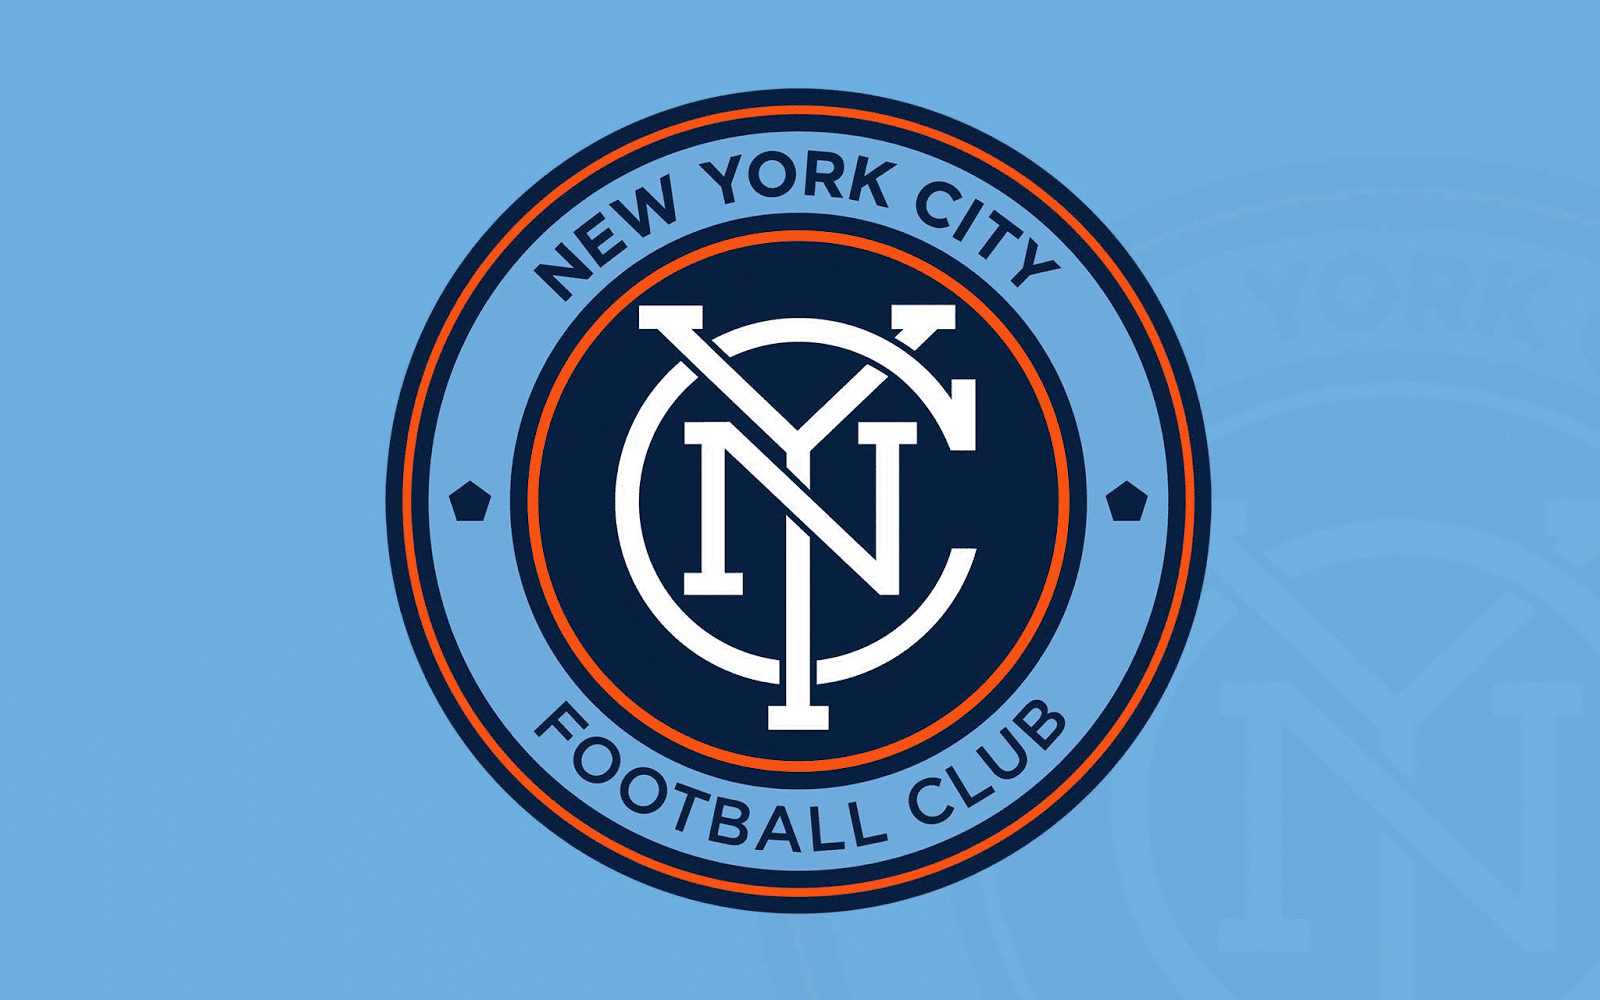 NYCFC_logo_fixed_wallpaper.png